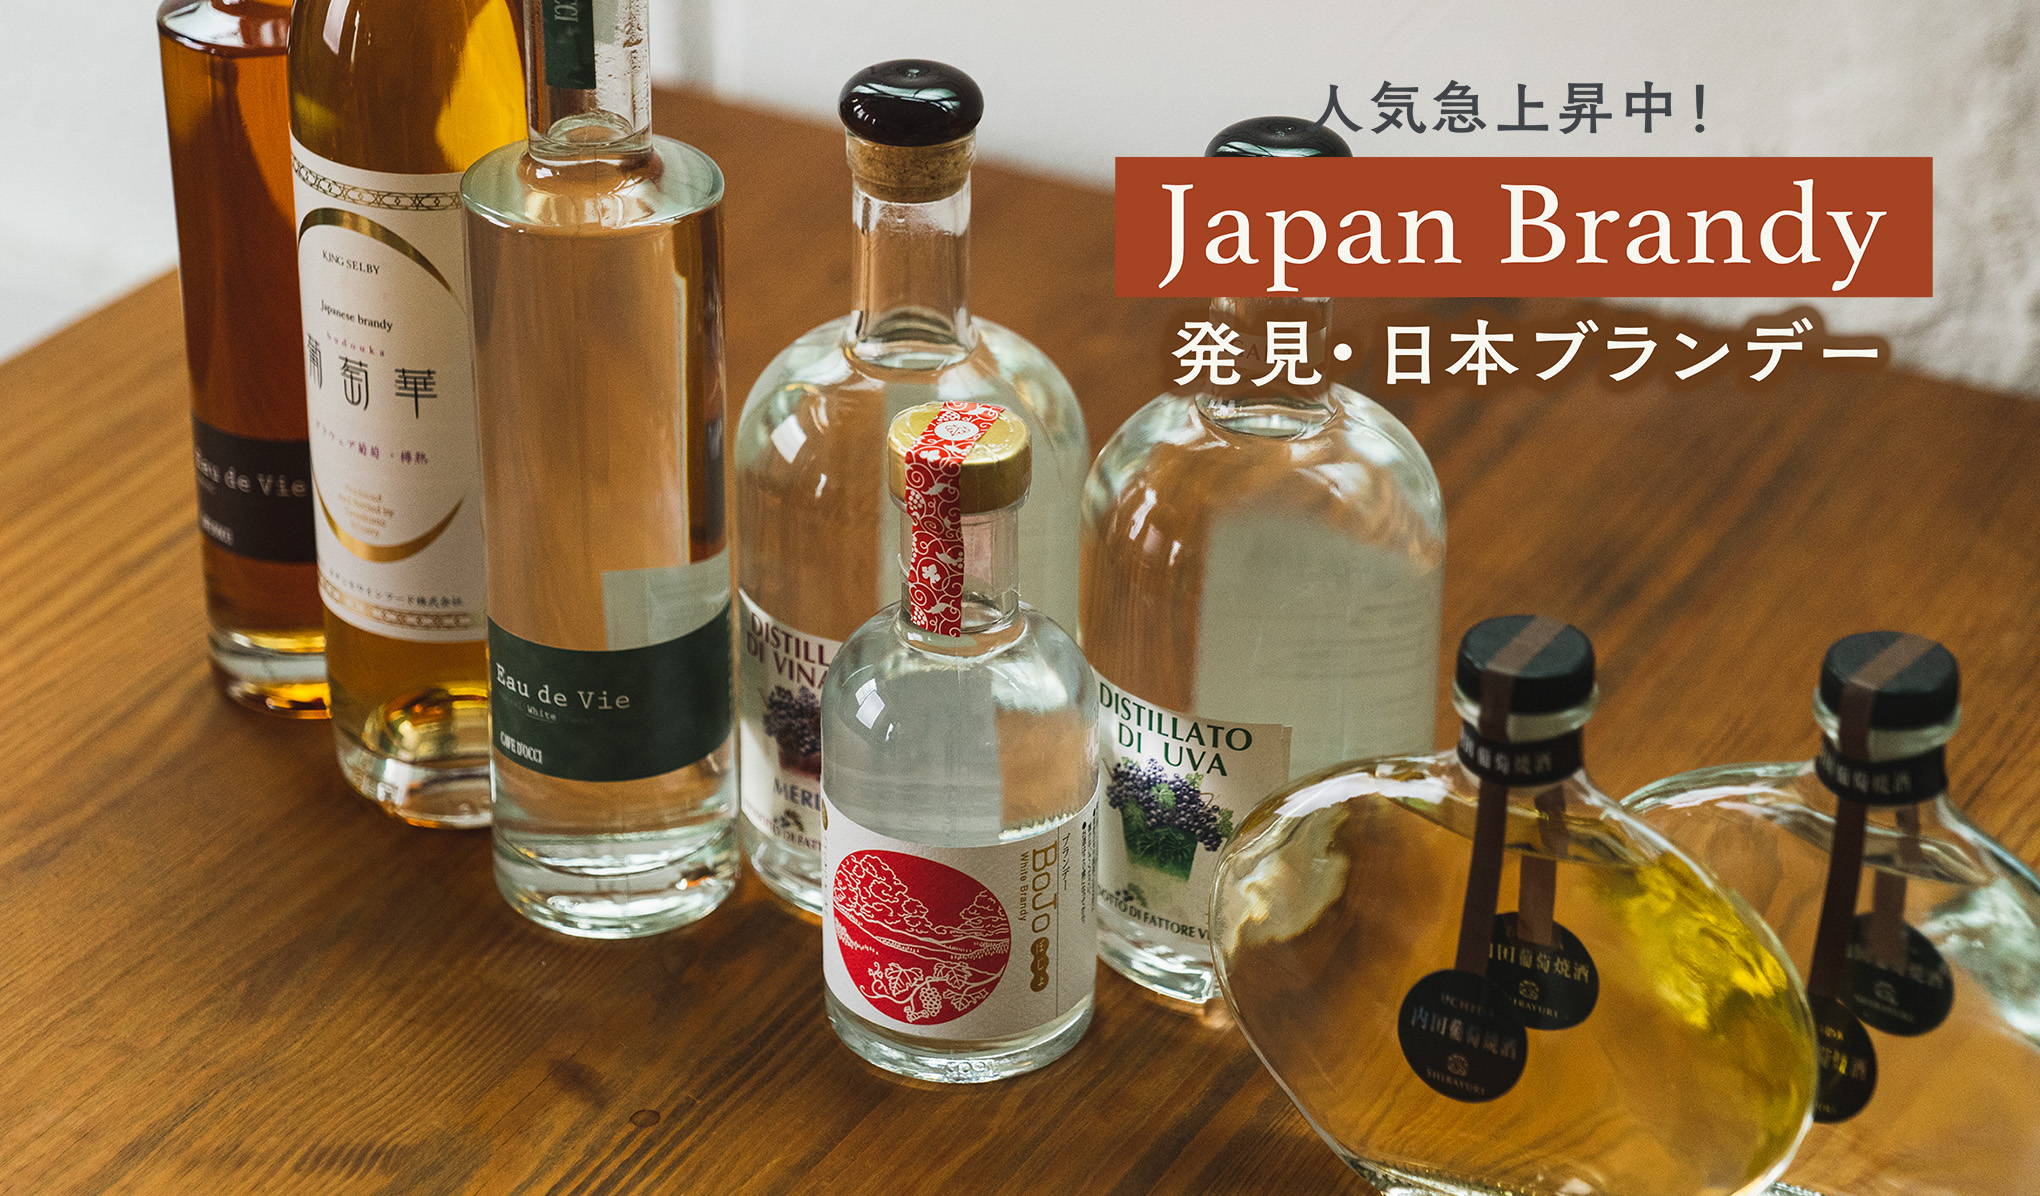 Japan Brandy 人気急上昇中！発見・日本ブランデー